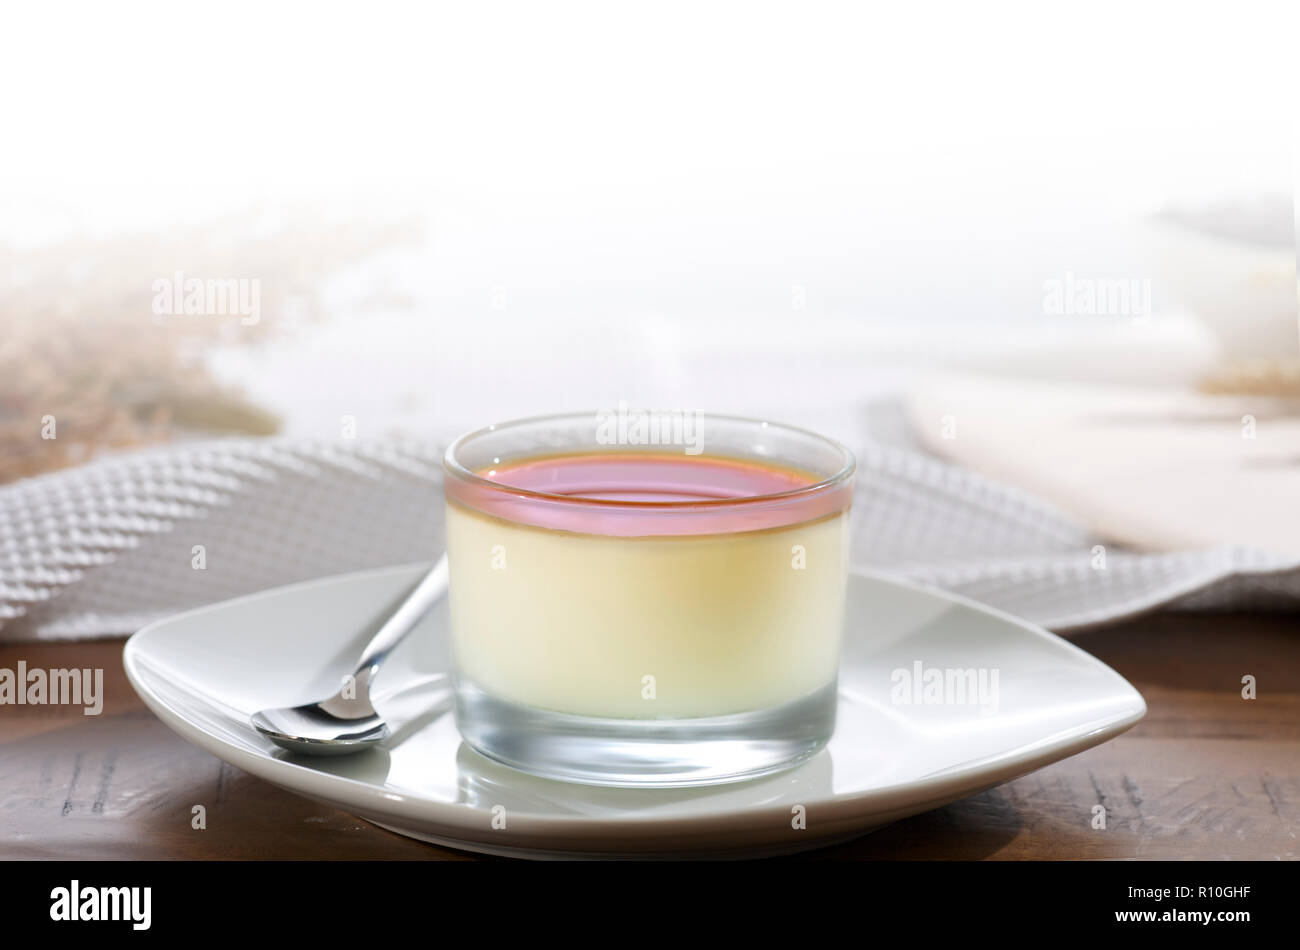 Close up di vetro il budino creme caramel sulla piastra con il cucchiaio, tovaglia bianca Foto Stock